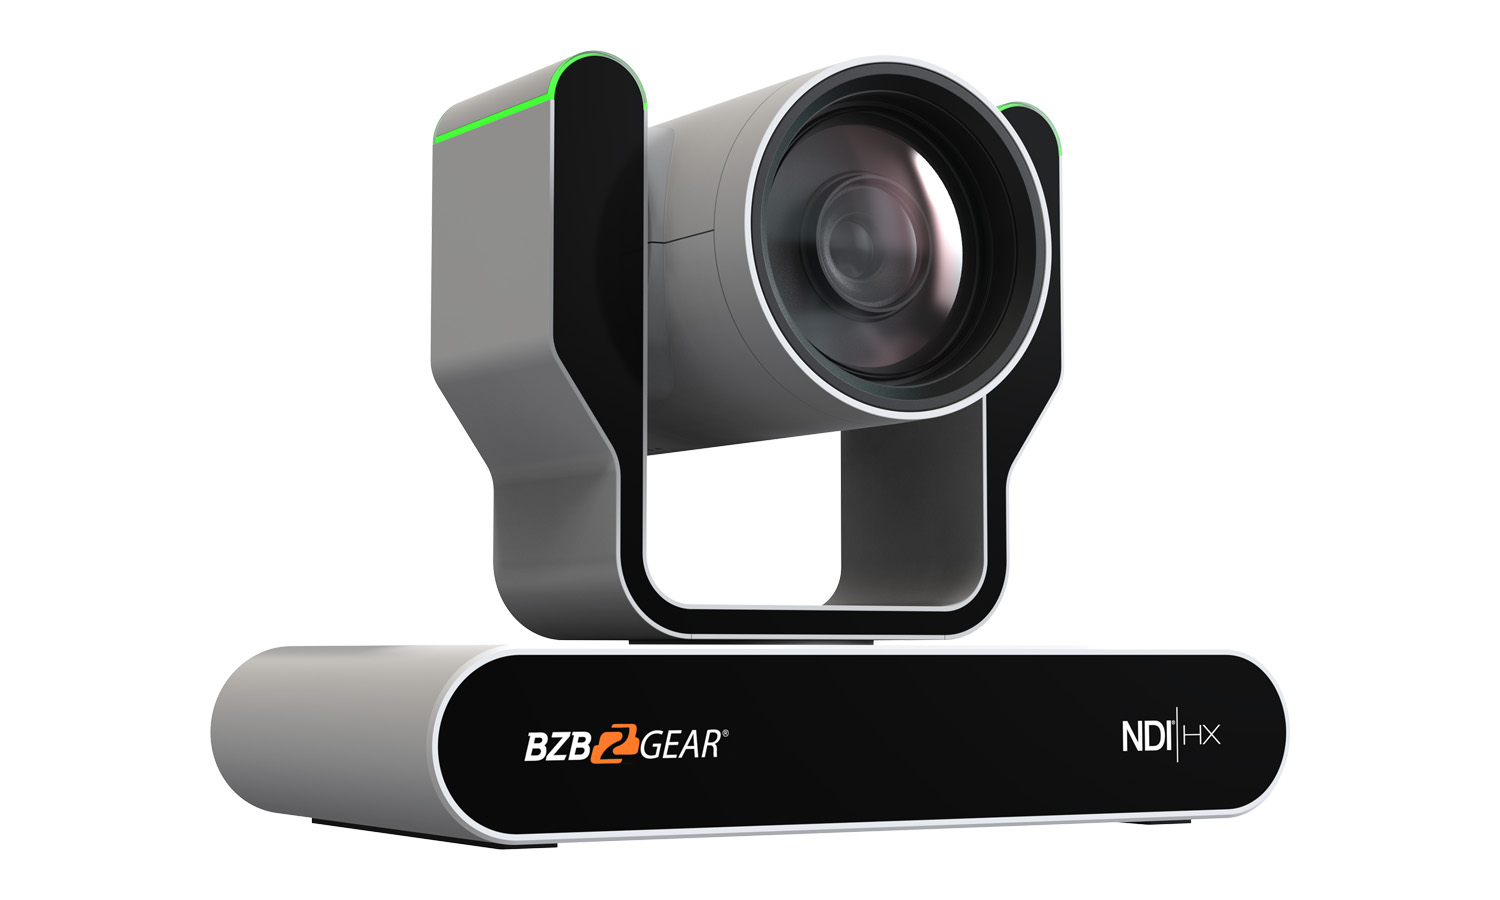 1080P Full HD Auto Tracking NDI|HX Live Streaming PTZ Camera